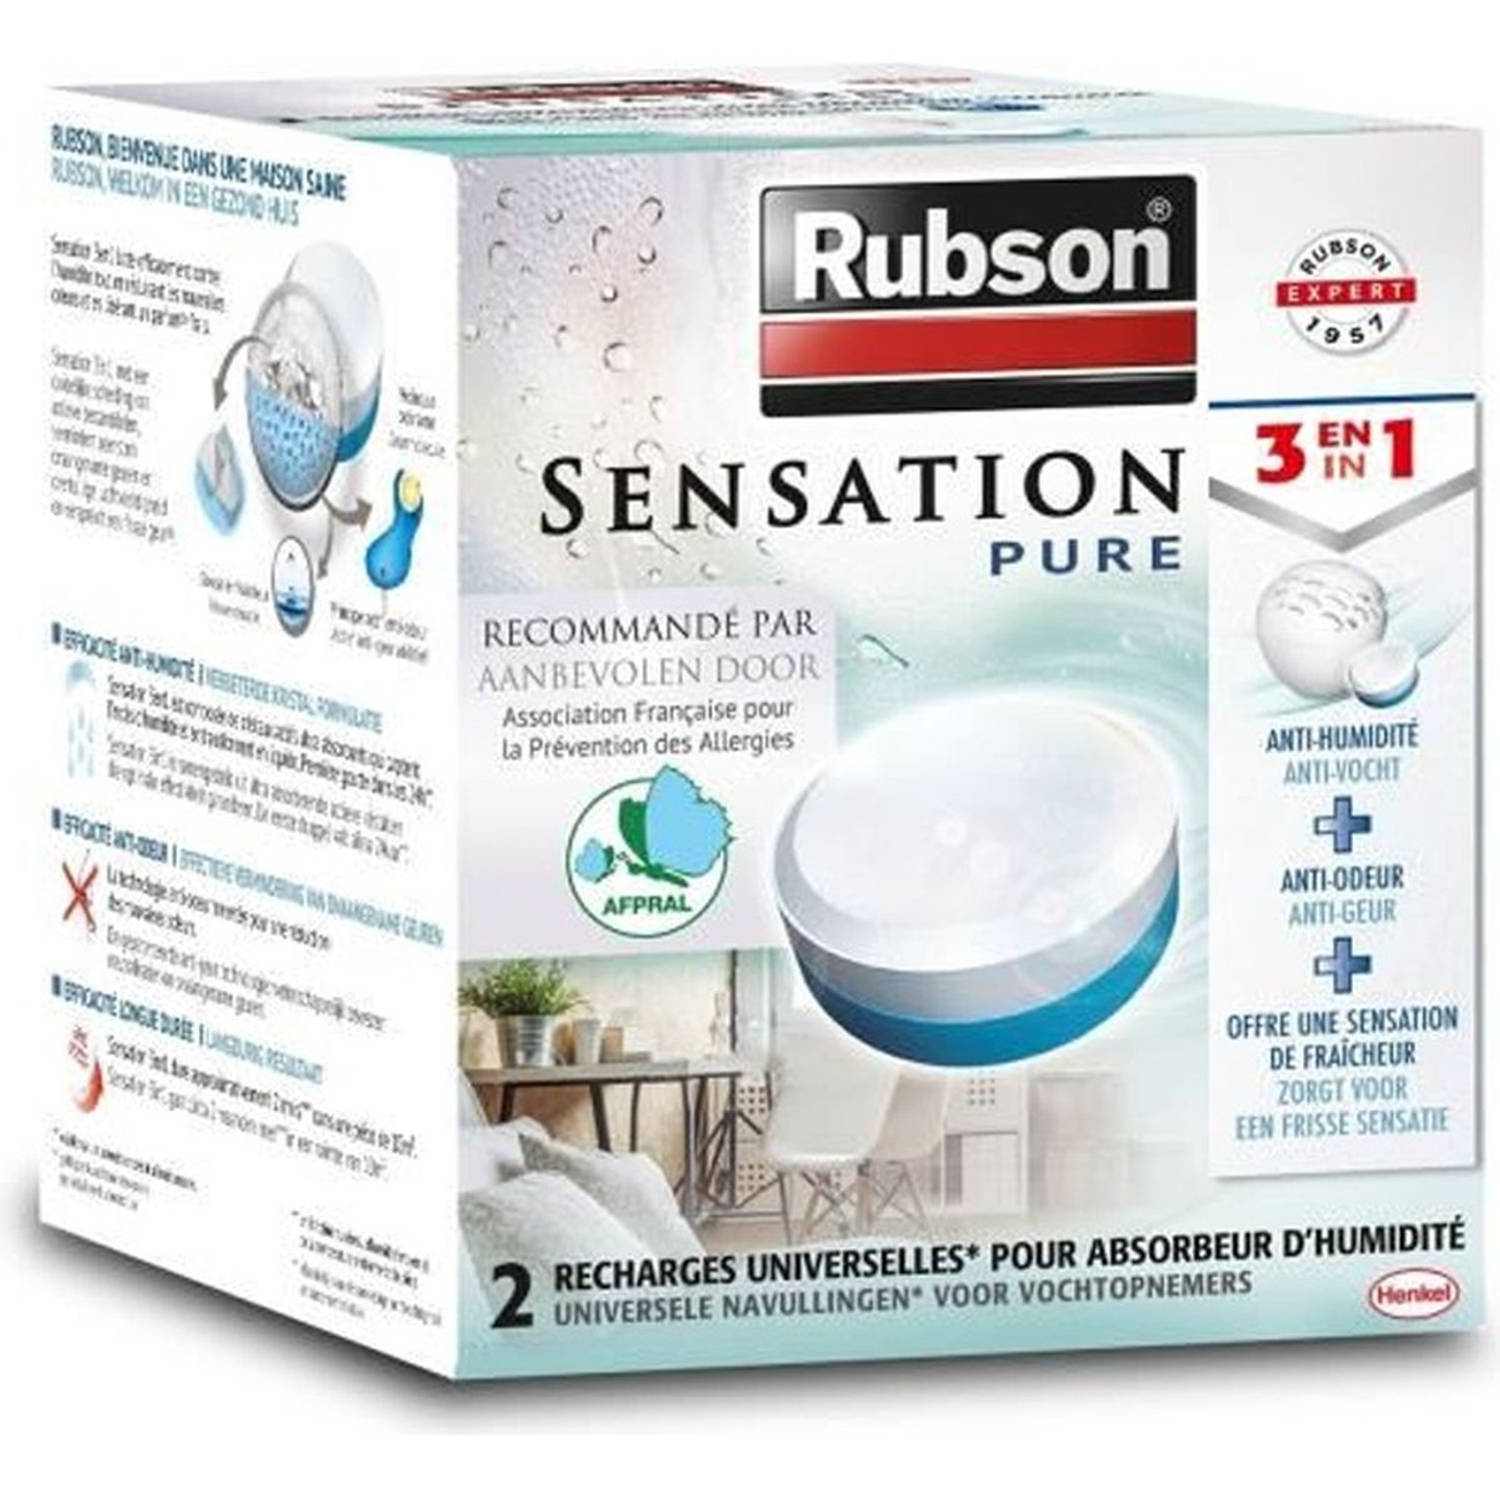 RUBSON Sensation 2 power tabs 3in1 welzijn * 6